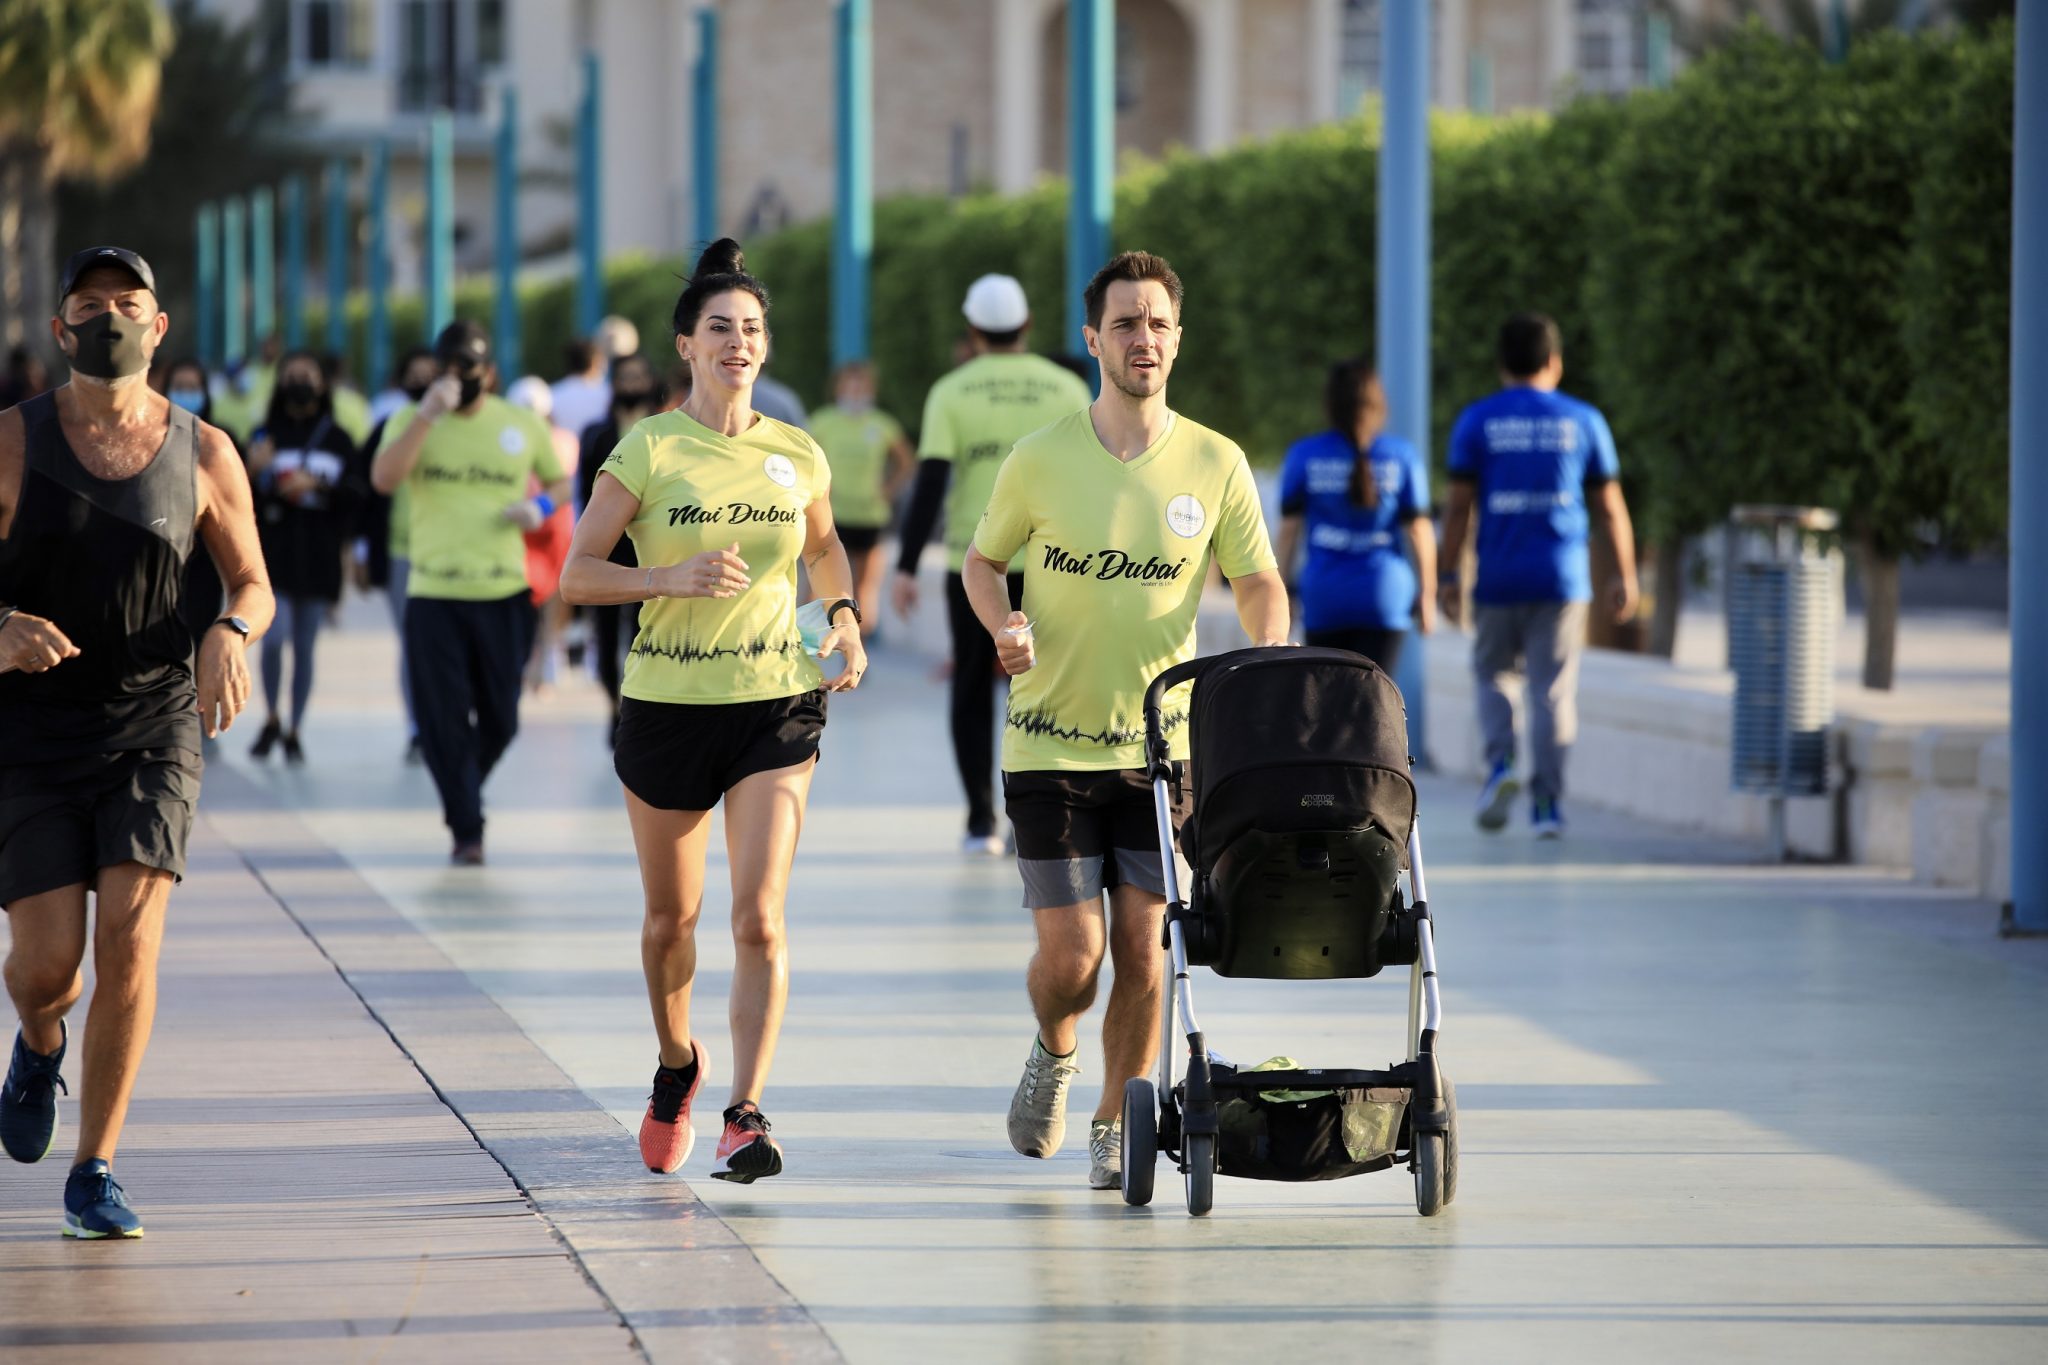 فعالية تحدي دبي للجري 2020 أسمى صور الوحدة في المجتمع الإماراتي